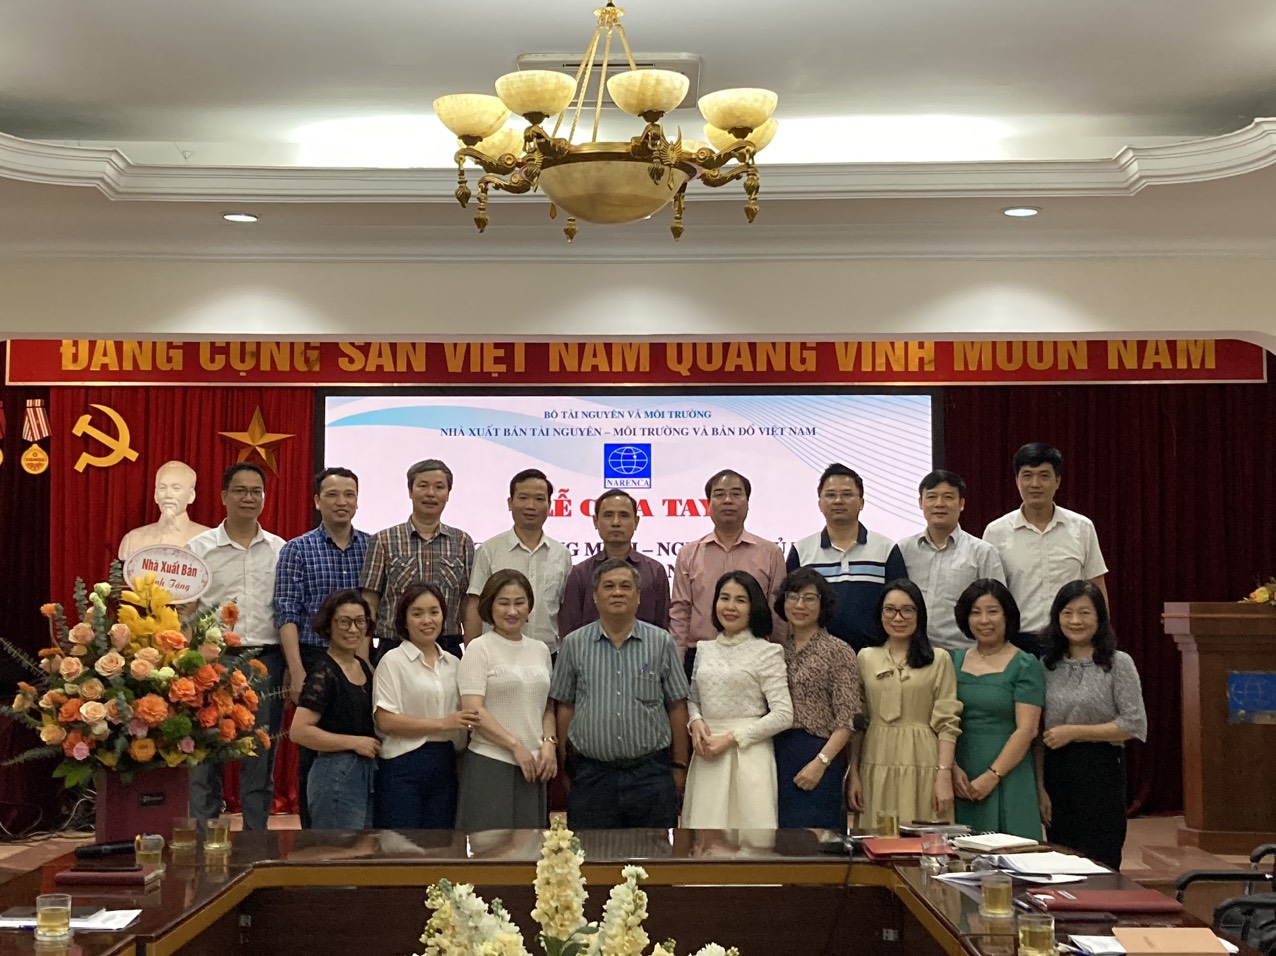 Lễ chia tay ông Kim Quang Minh - Nguyên Chủ tịch kiêm Tổng Giám đốc Nhà xuất bản Tài nguyên - Môi trường và Bản đồ Việt Nam